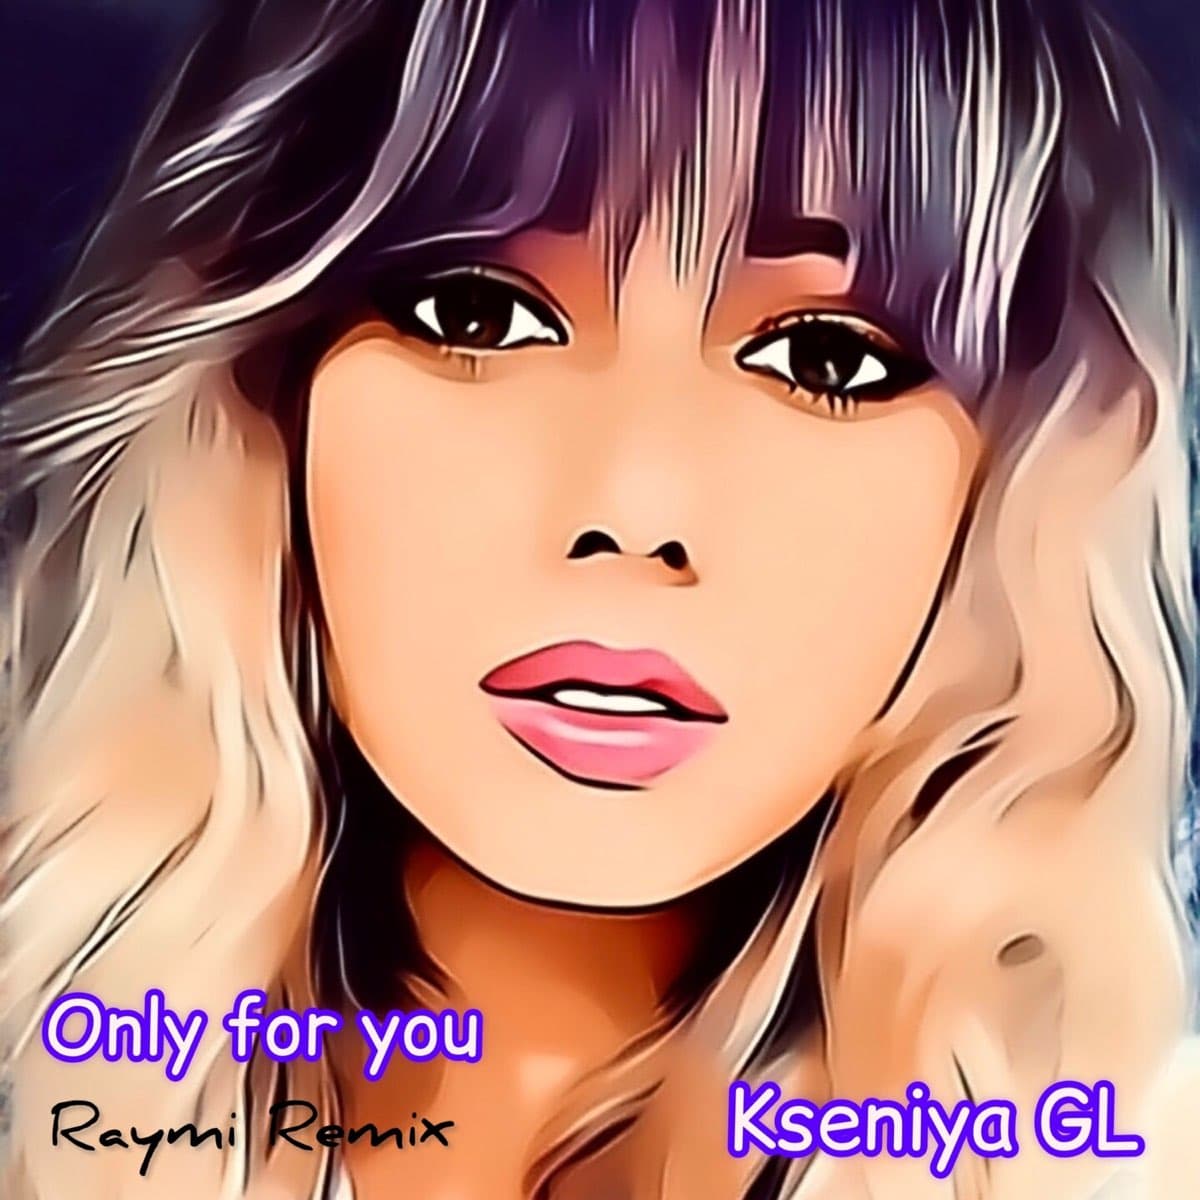 Рингтон Only for you (Raymi remix) (Kseniya GL)